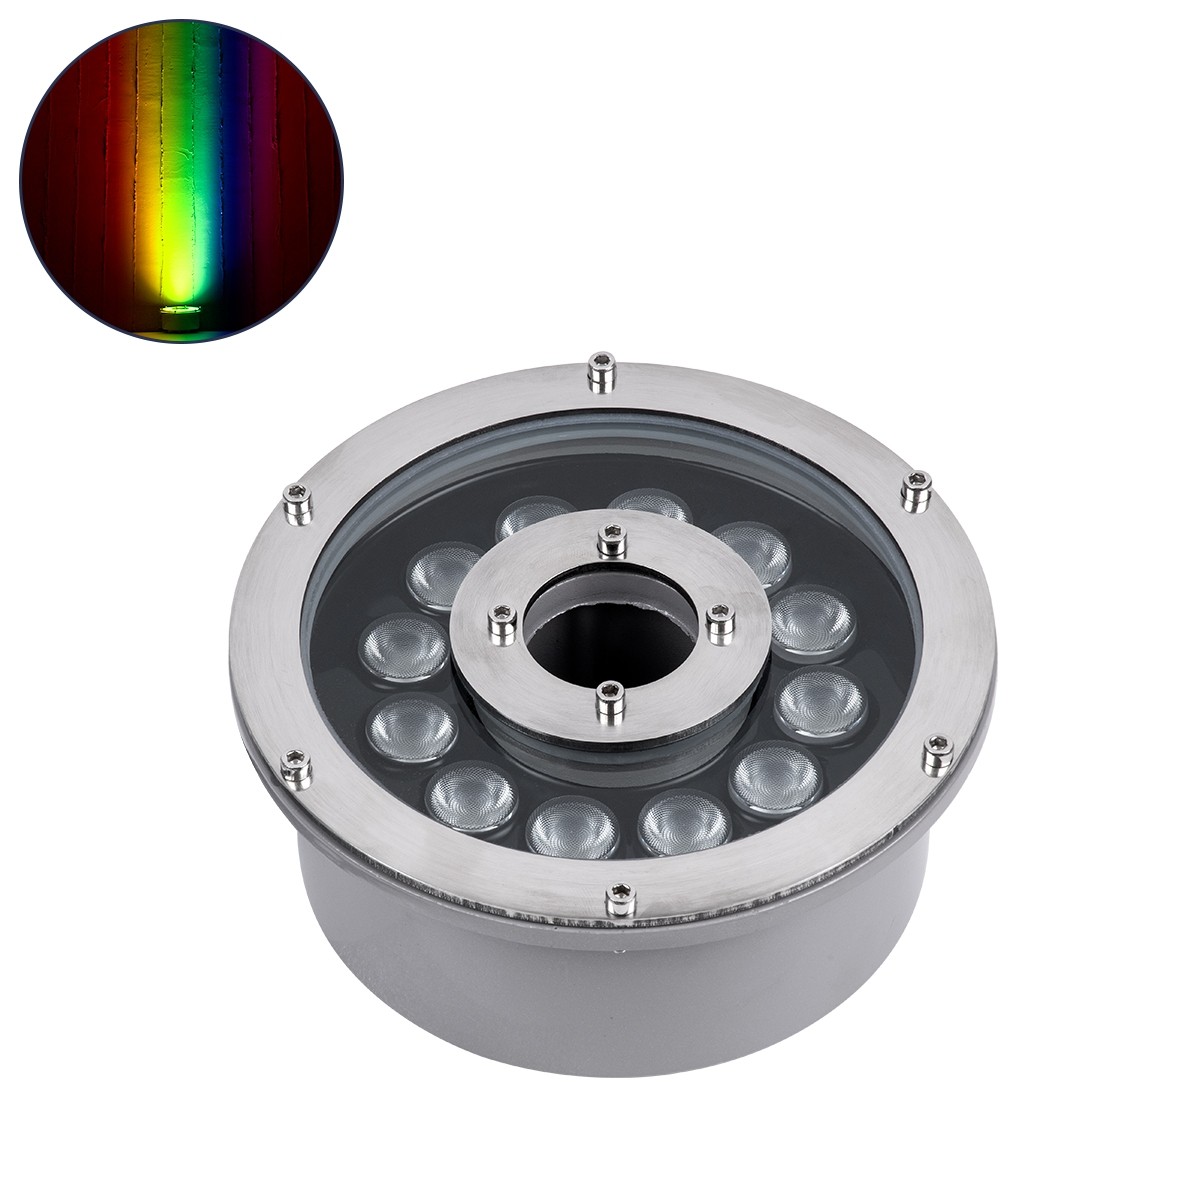 LED Φωτιστικό Υποβρύχιο Σποτ Ειδικό για Σιντριβάνια FINA 9W RGBW DMX512IP68 Φ16 x Υ8cm Ανοξείδωτο Ατσάλι